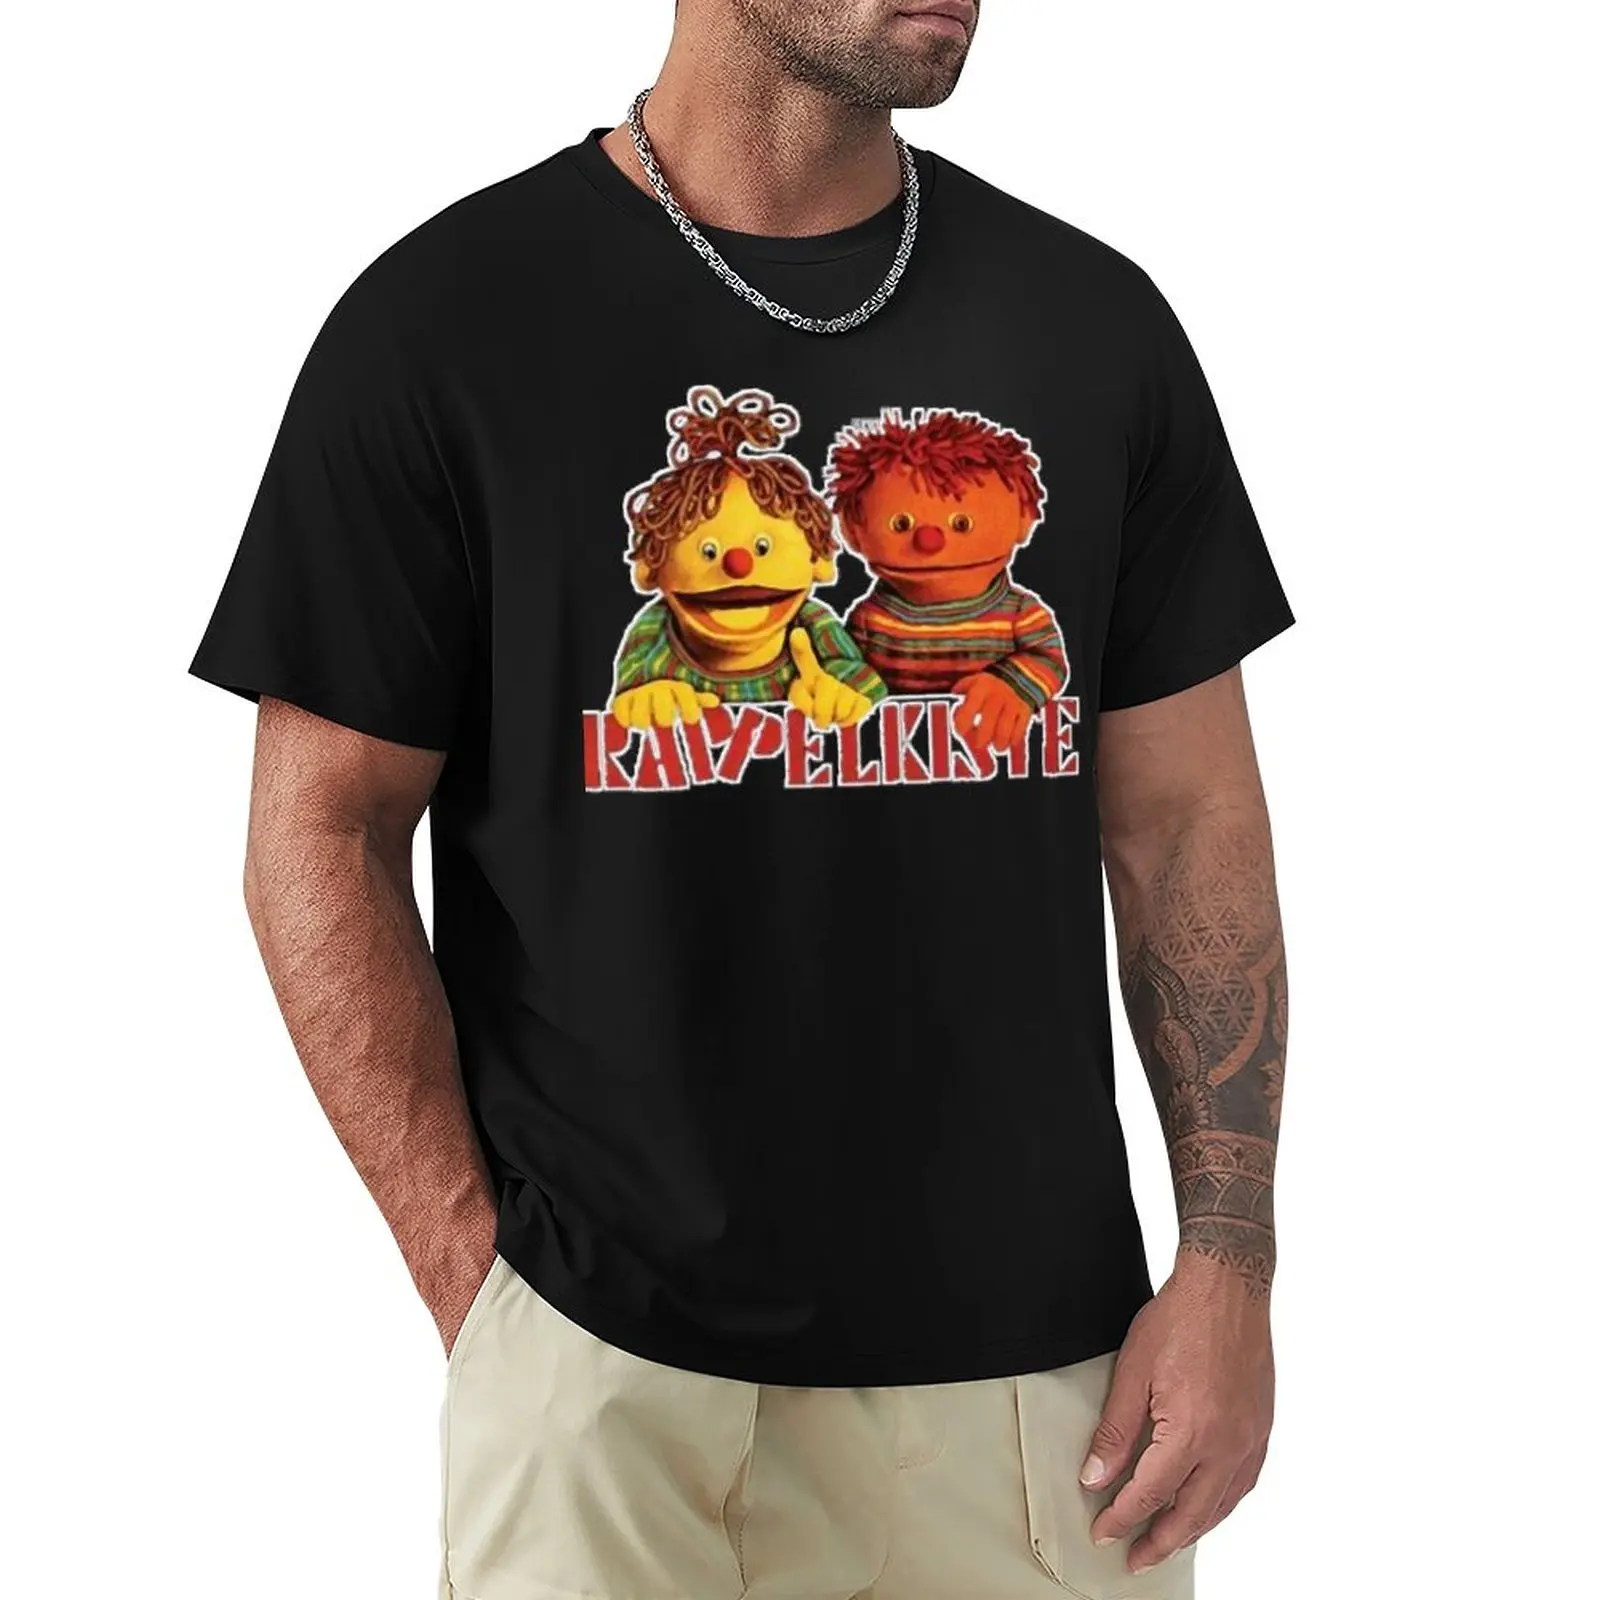 

Ratz Und rübe - Rappelkiste Classic T-Shirt Hippie Clothes Sweat Shirt t-shirts Man Summer Tops Men Workout Shirt